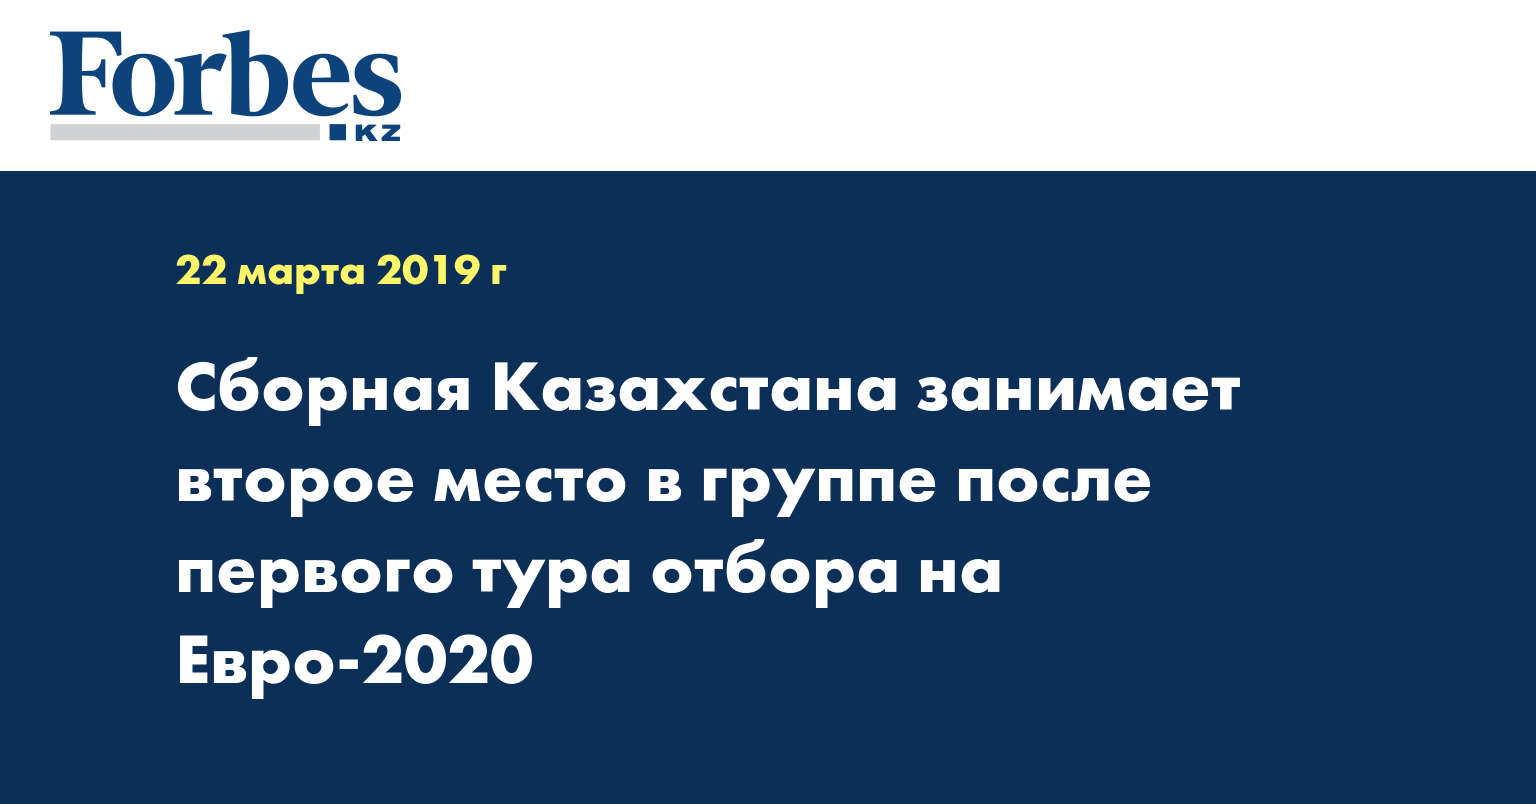 Сборная Казахстана занимает второе место в группе после первого тура отбора на Евро-2020